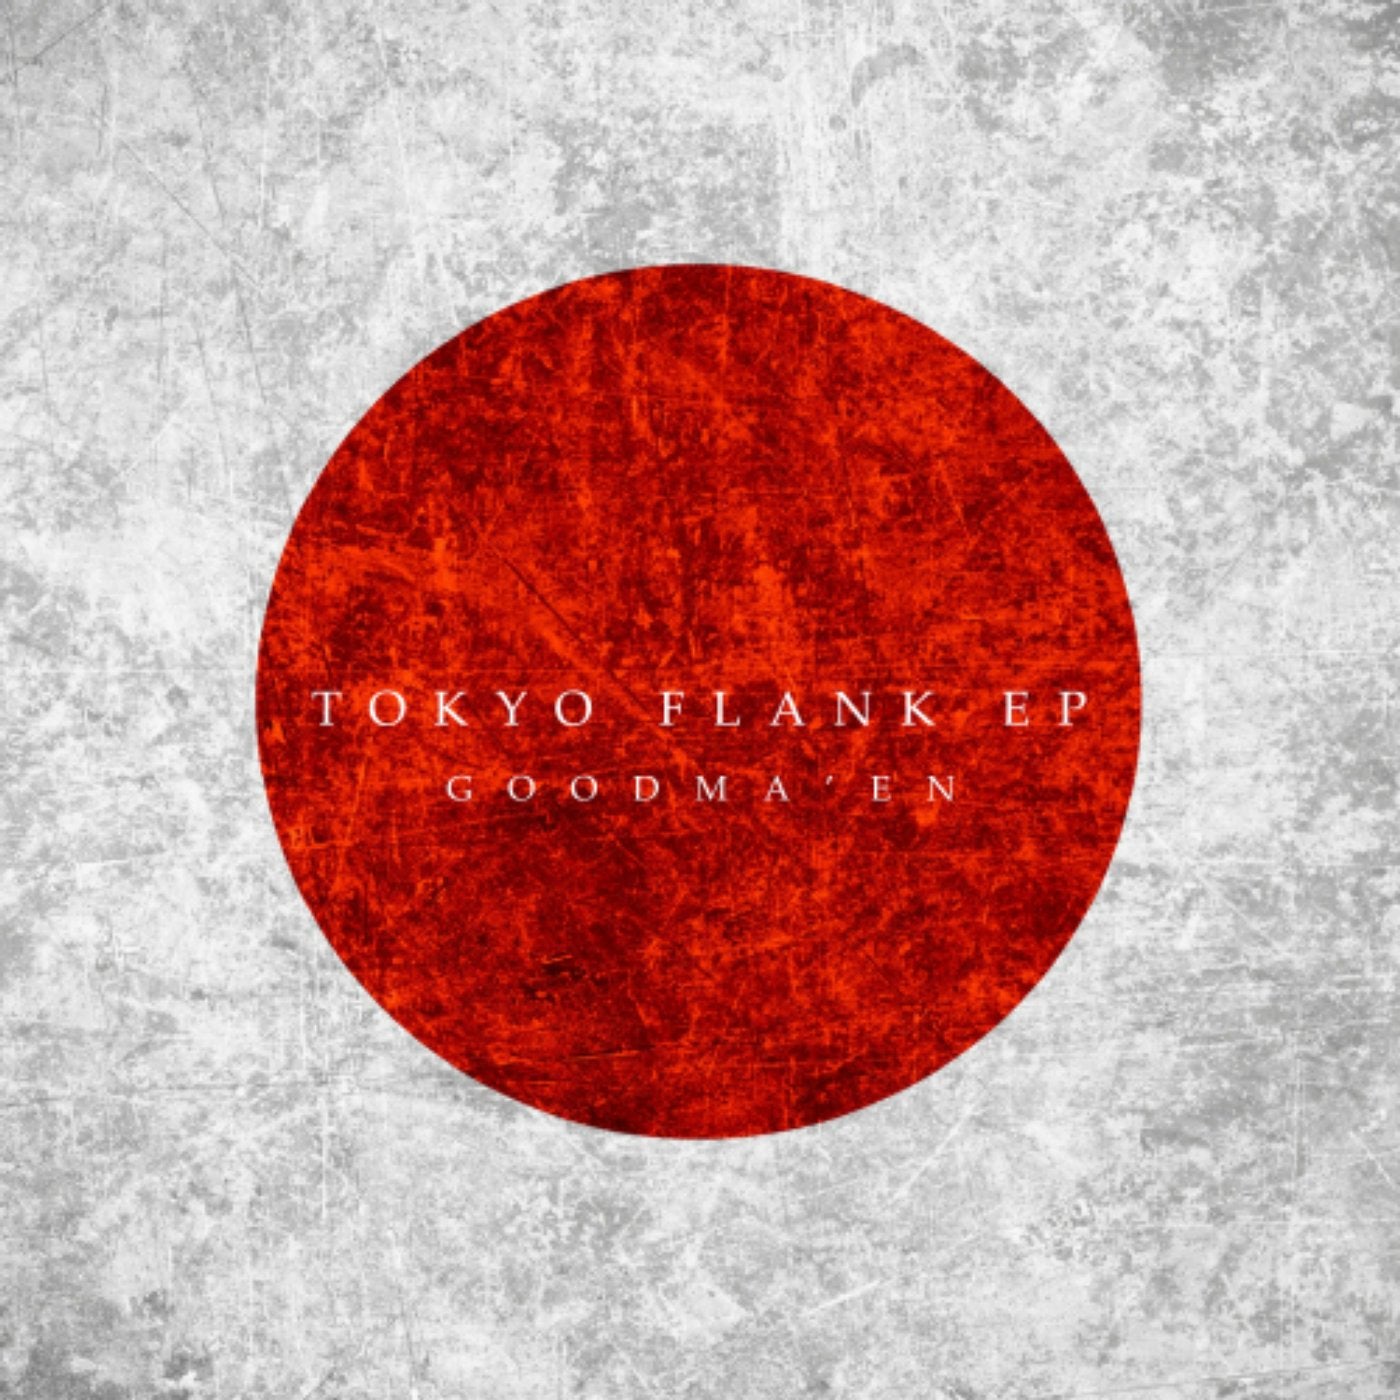 Tokyo Flank EP